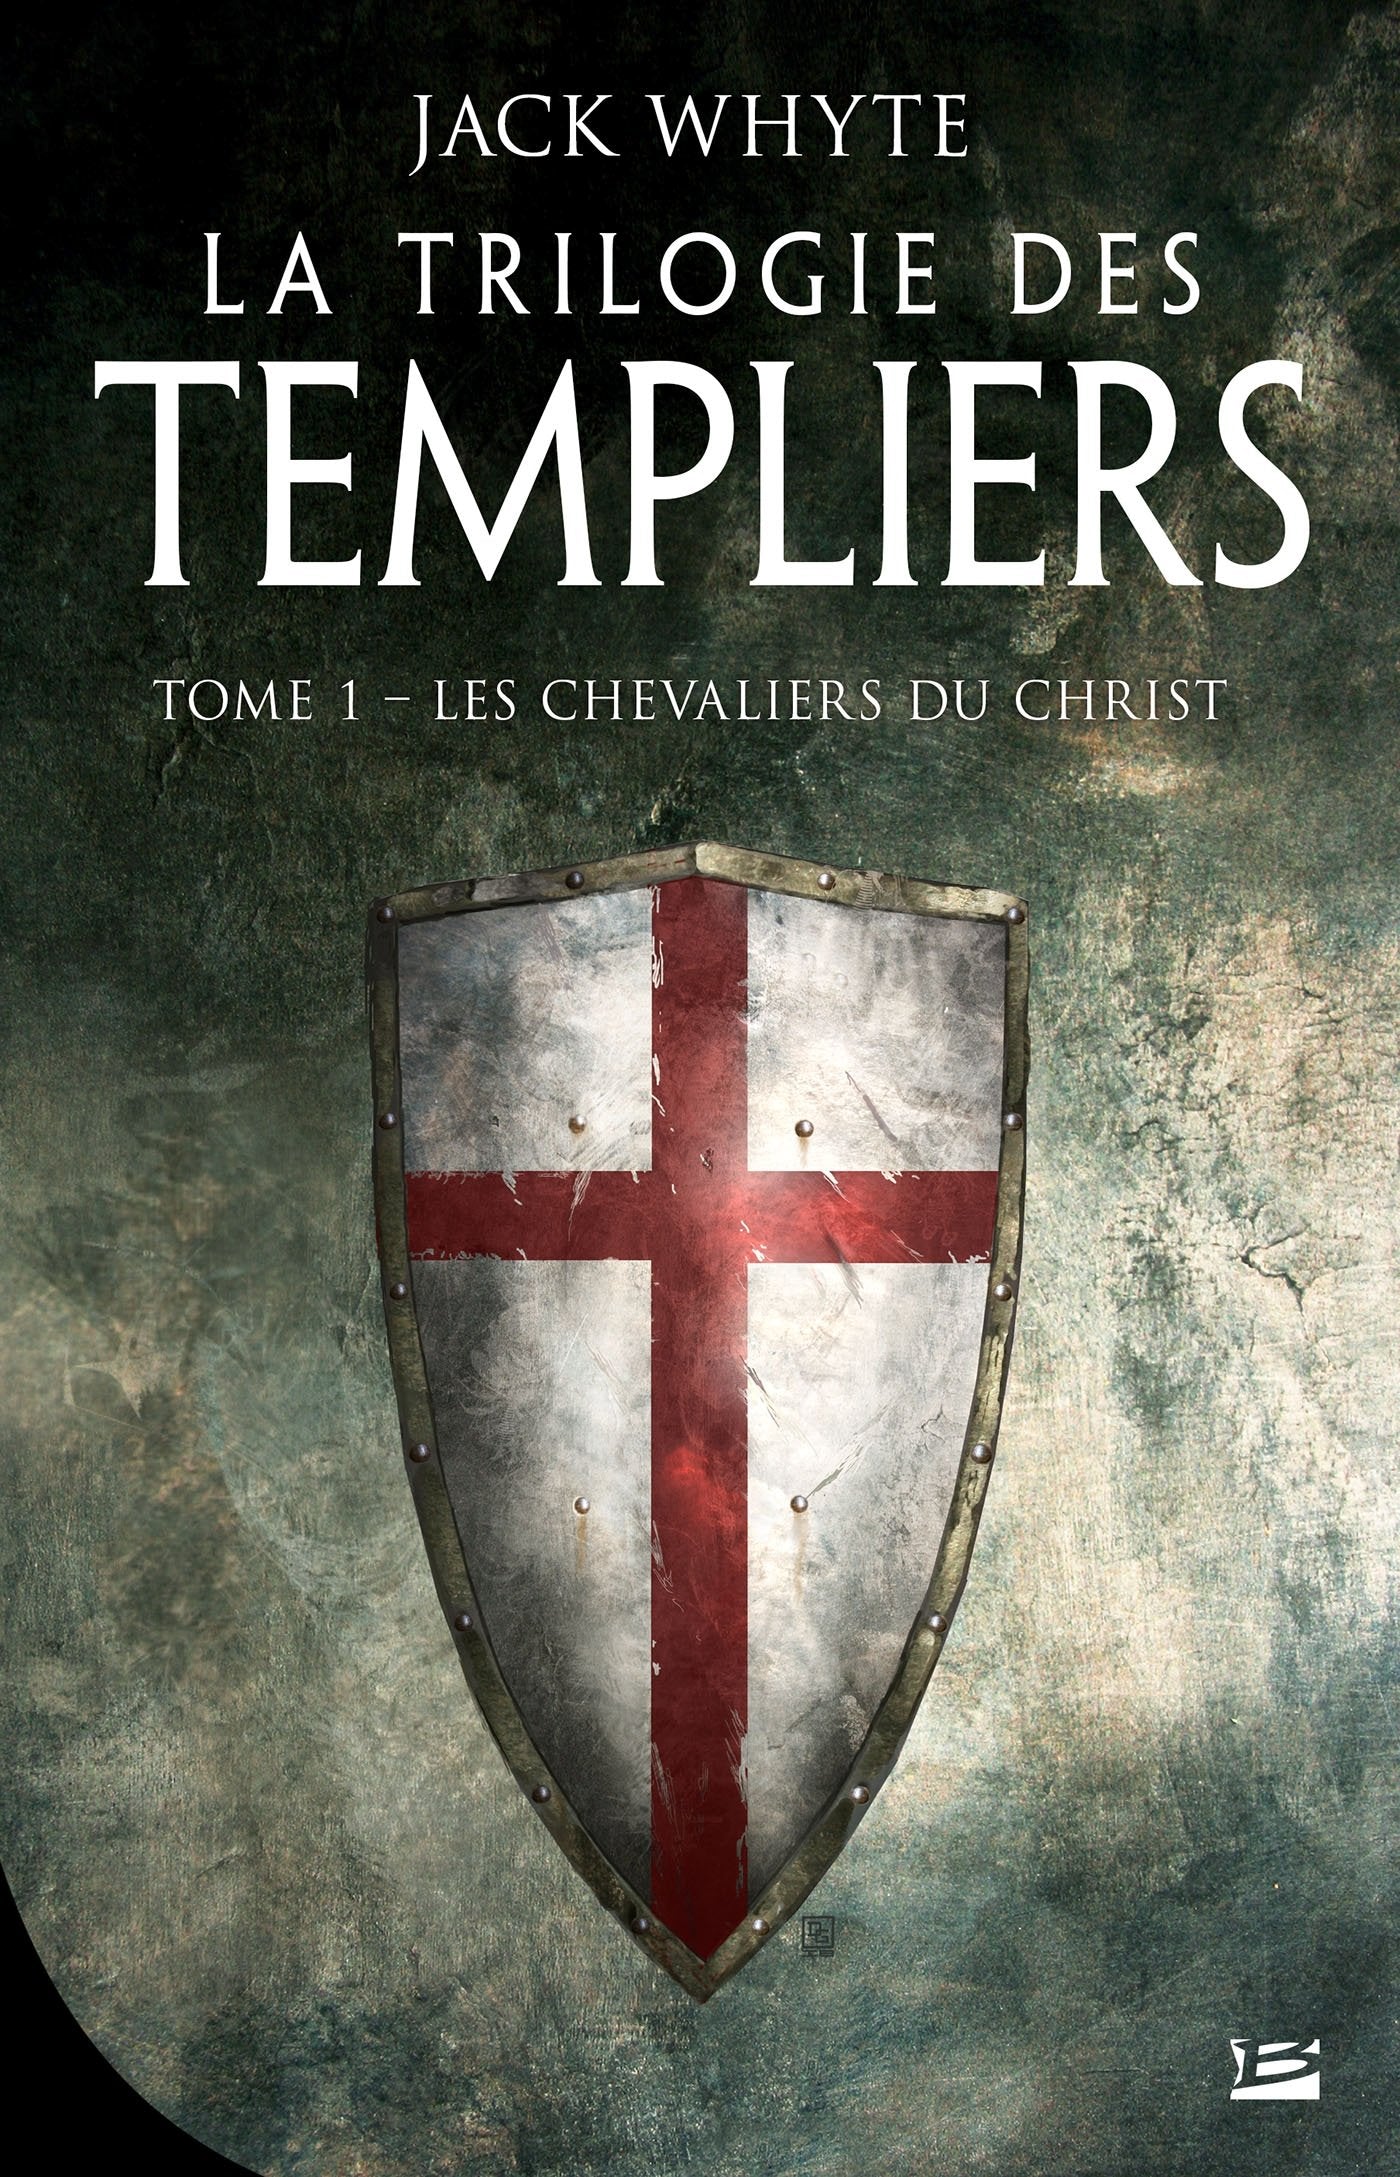 La trilogie des templiers # 1 : Les chevaliers du Christ - Jack Whyte